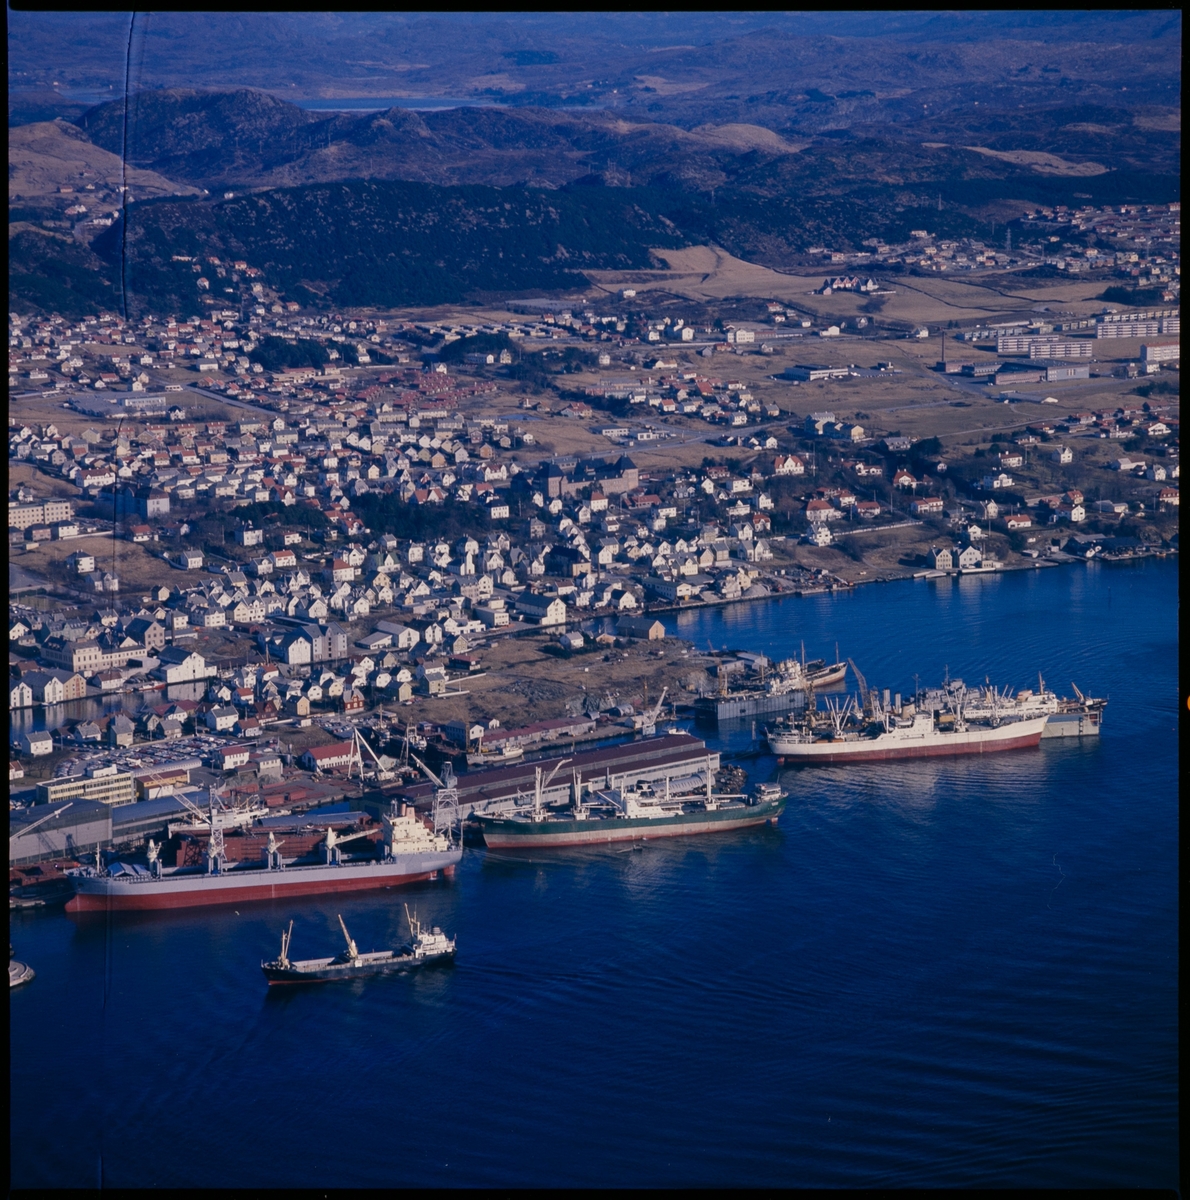 Flyfoto av Haugesund Mekaniske Verksted med Risøy og Haugesund i bakgrunnen. Det ligger flere store skip ved verftet.